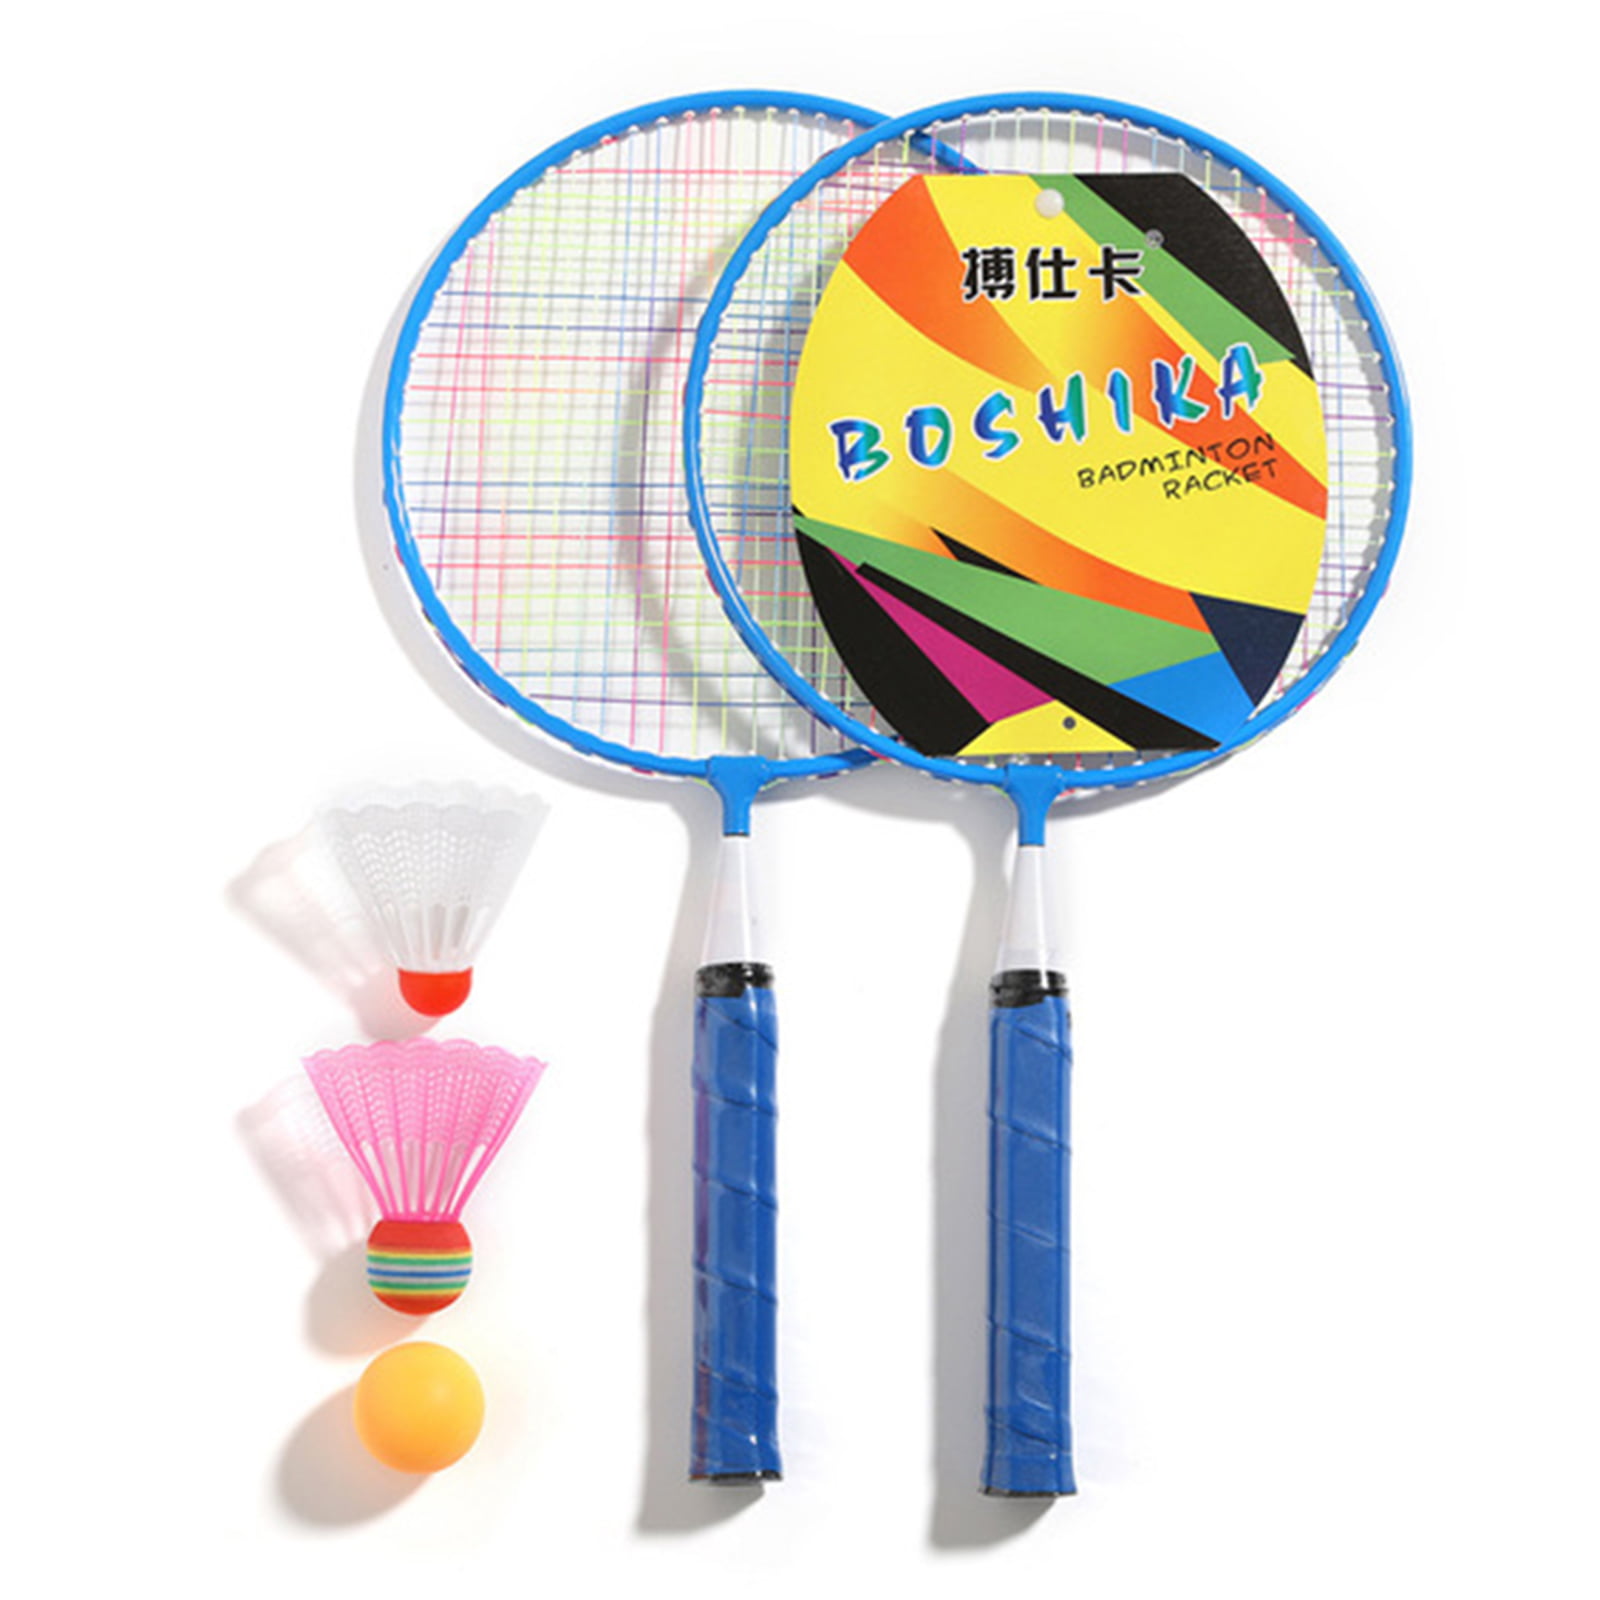 Badminton Set For Kids Outdoor Garden Games Racket And Shuttlecock Tennis Racque 